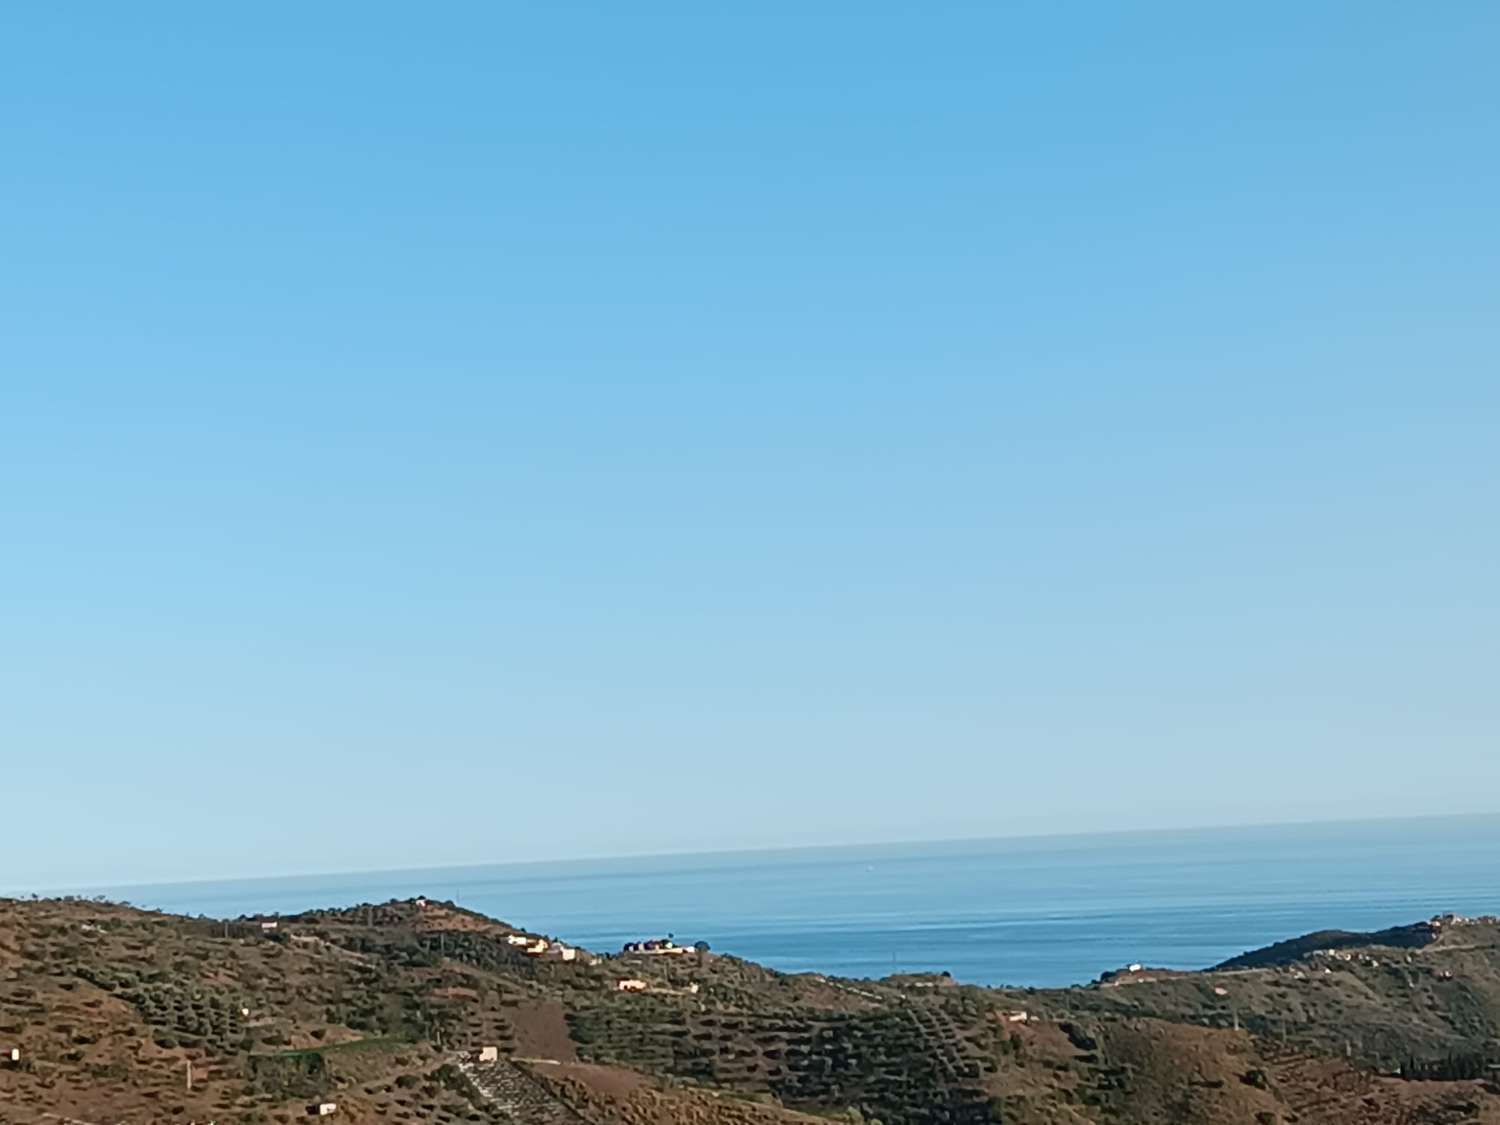 parcel·la en molinet amb vistes al mar